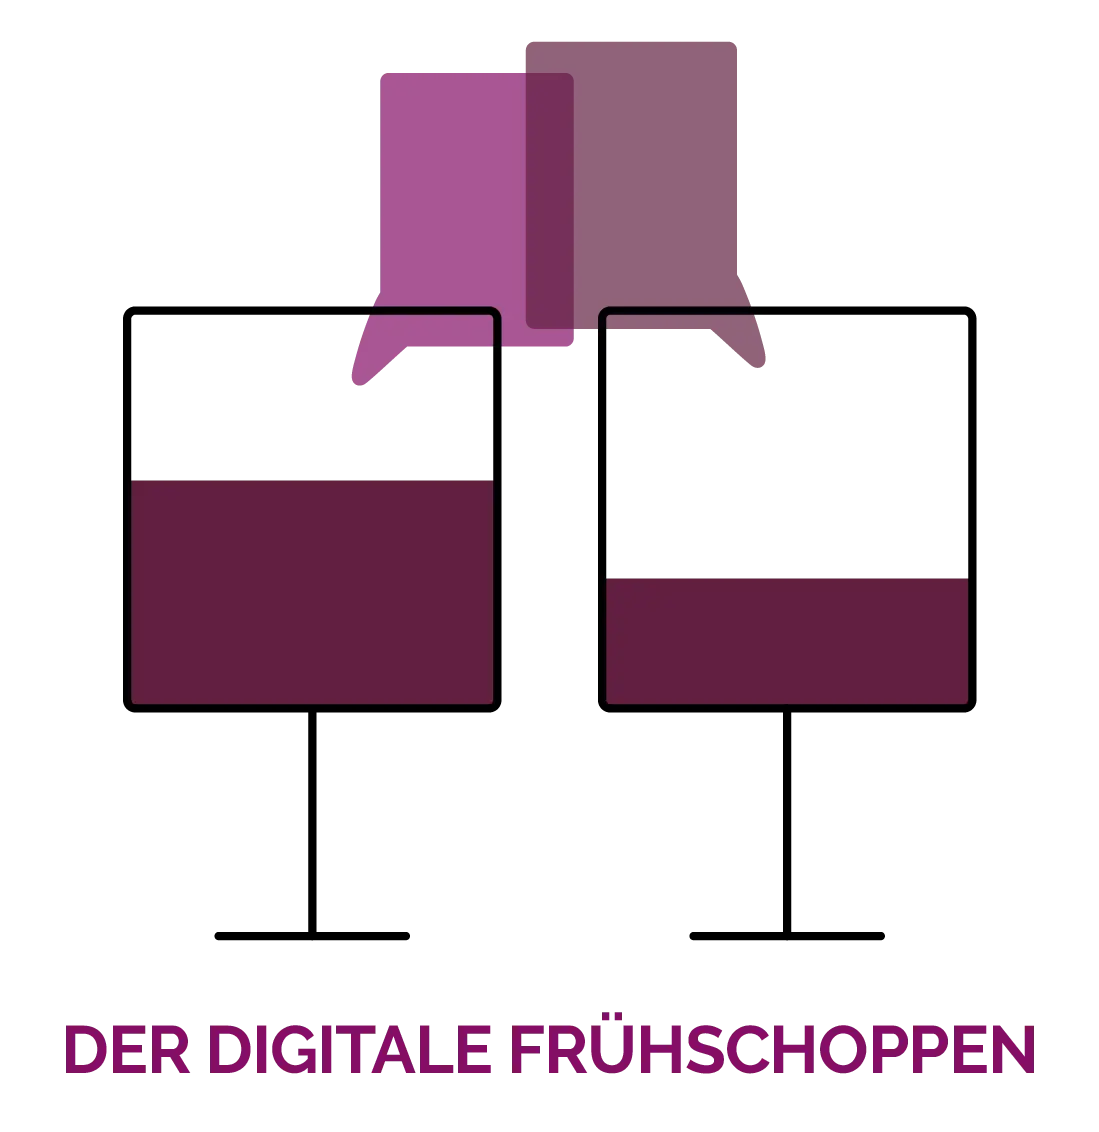 Das Logo des Digitalen Frühschoppen zeigt zwei Gläser Wein und zwei Sprechblasen